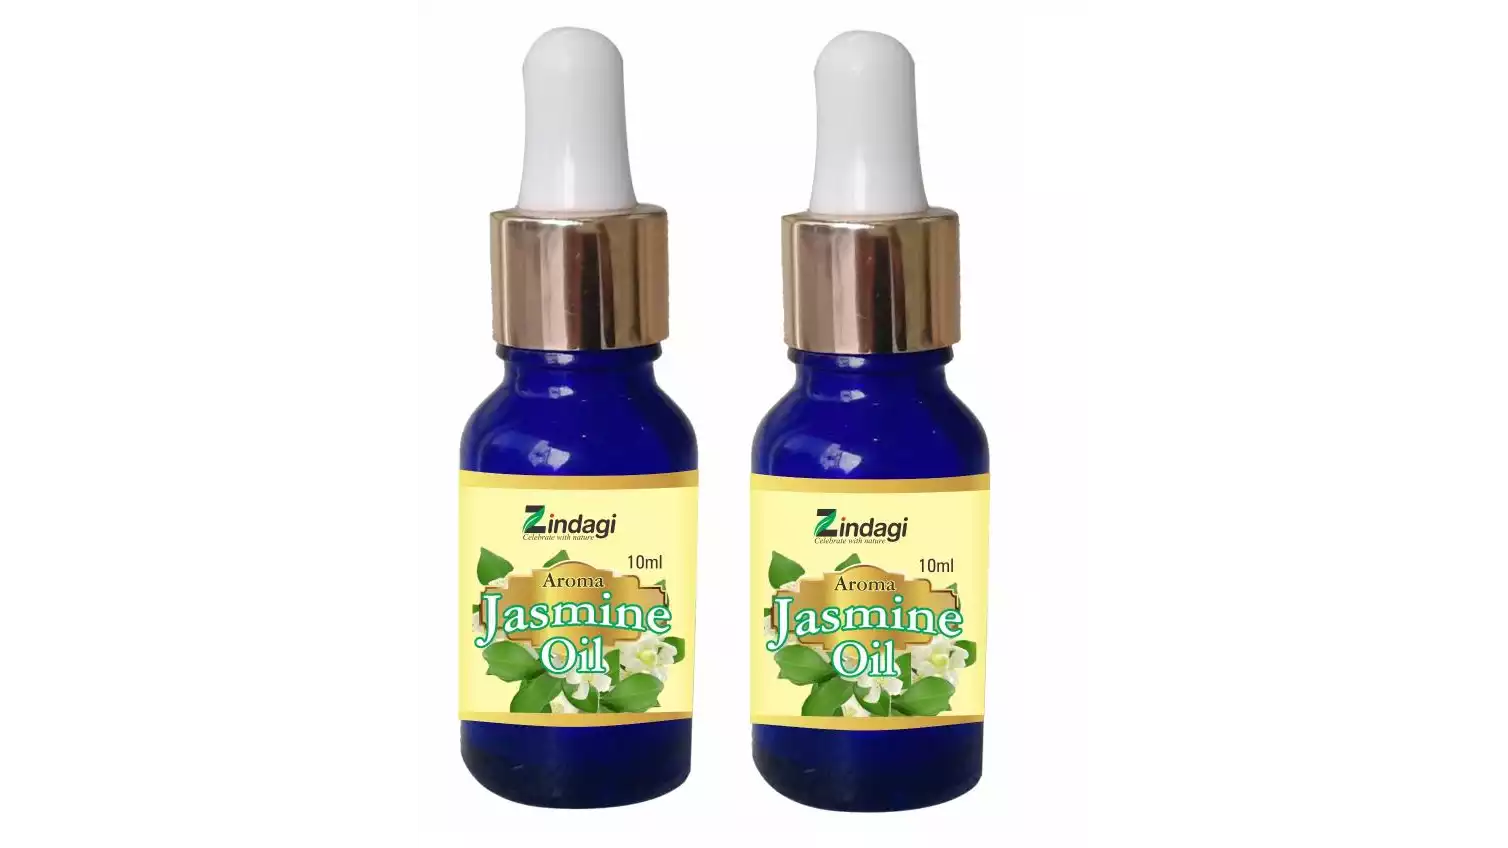 Zindagi Jasmine Oil - Natural Aroma Oils (10ml, Pack of 2)